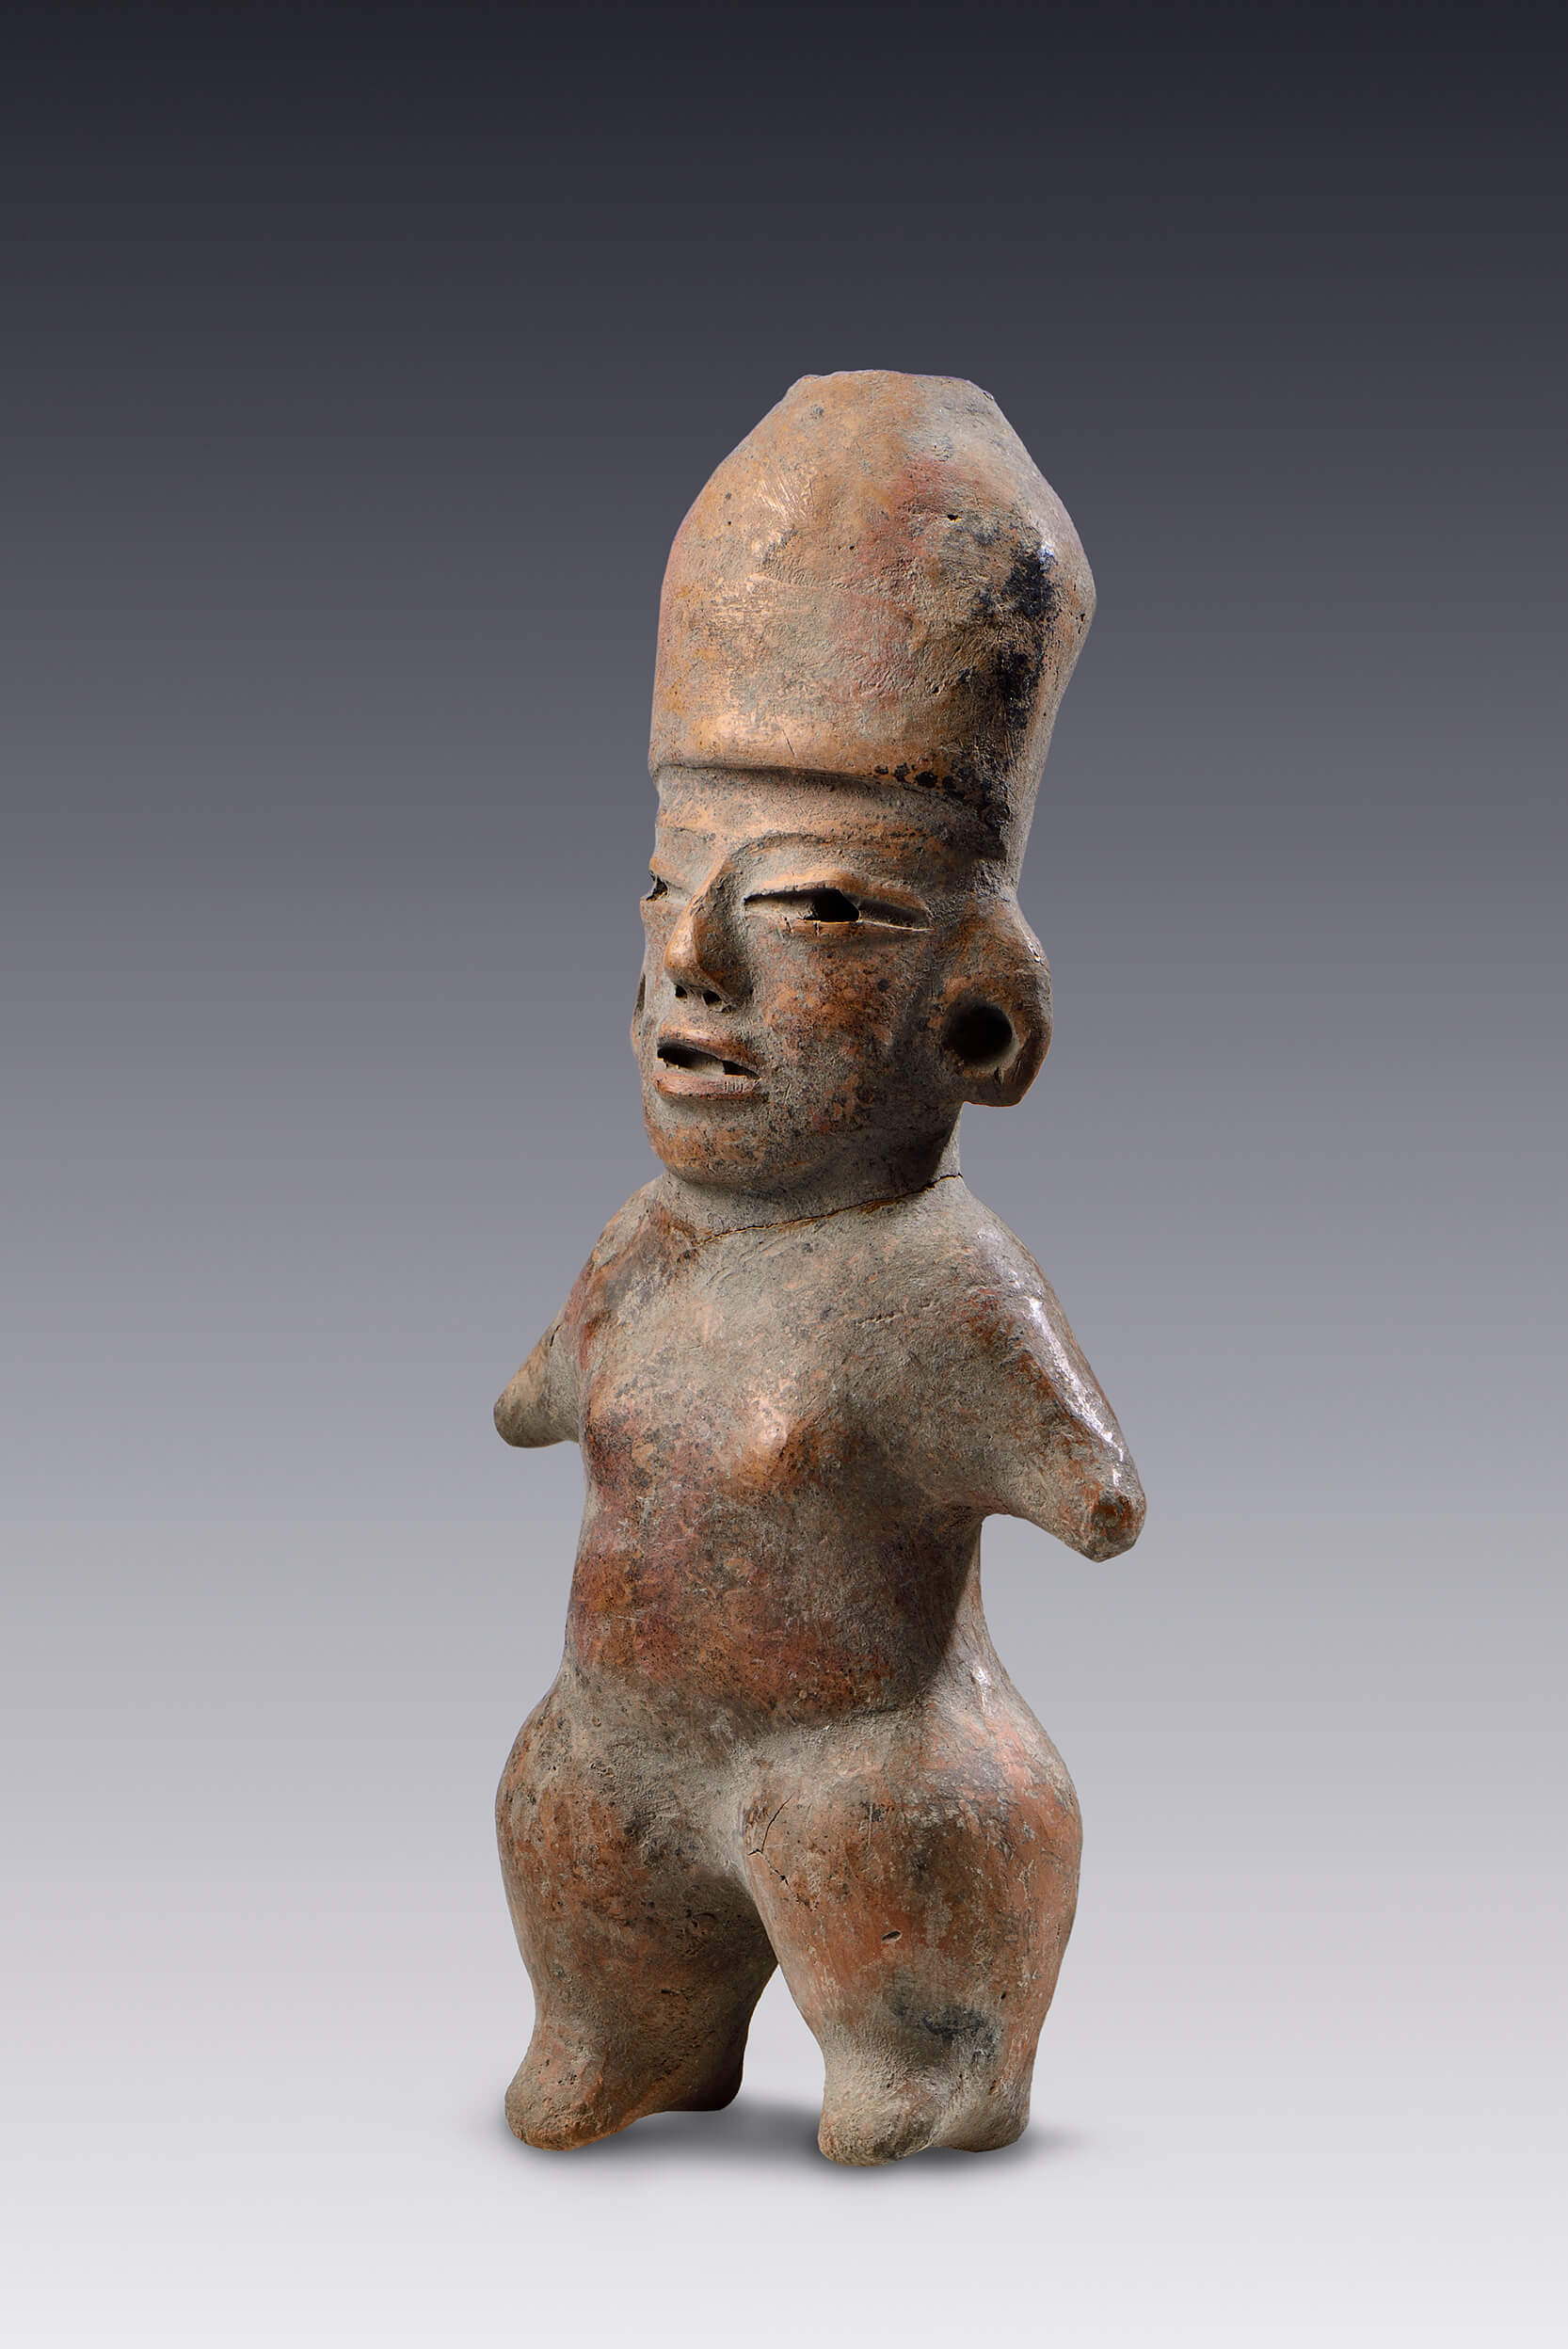 Figuras antropomórficas gemelas | El México antiguo. Salas de Arte Prehispánico | Museo Amparo, Puebla